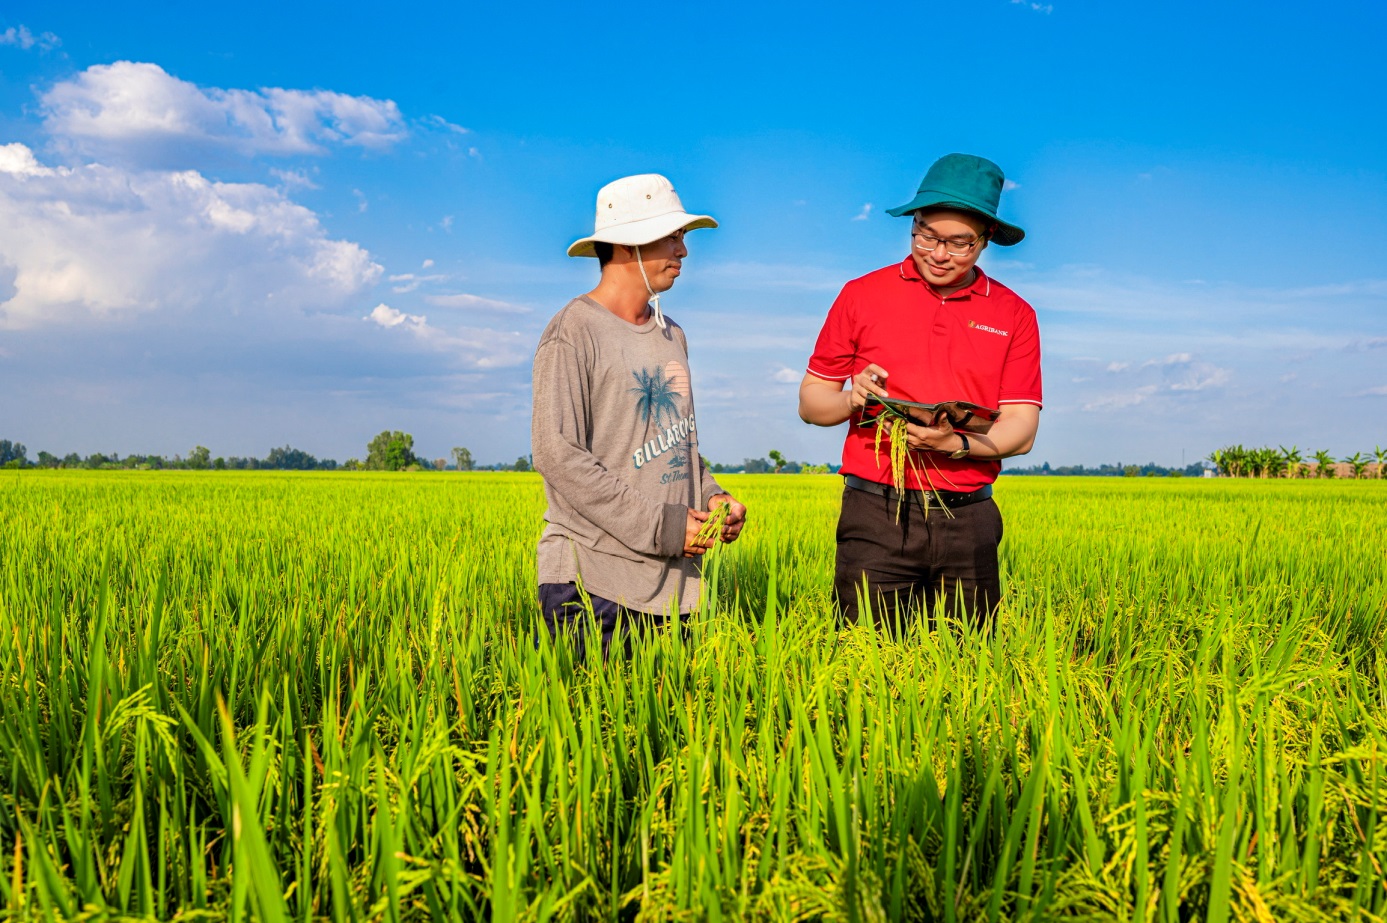 Gần 70% dư nợ cho vay phục vụ phát triển nông nghiệp, nông dân và nông thôn, chiếm tỷ trọng lớn nhất trong dư nợ tín dụng “Tam nông” tại Việt Nam.